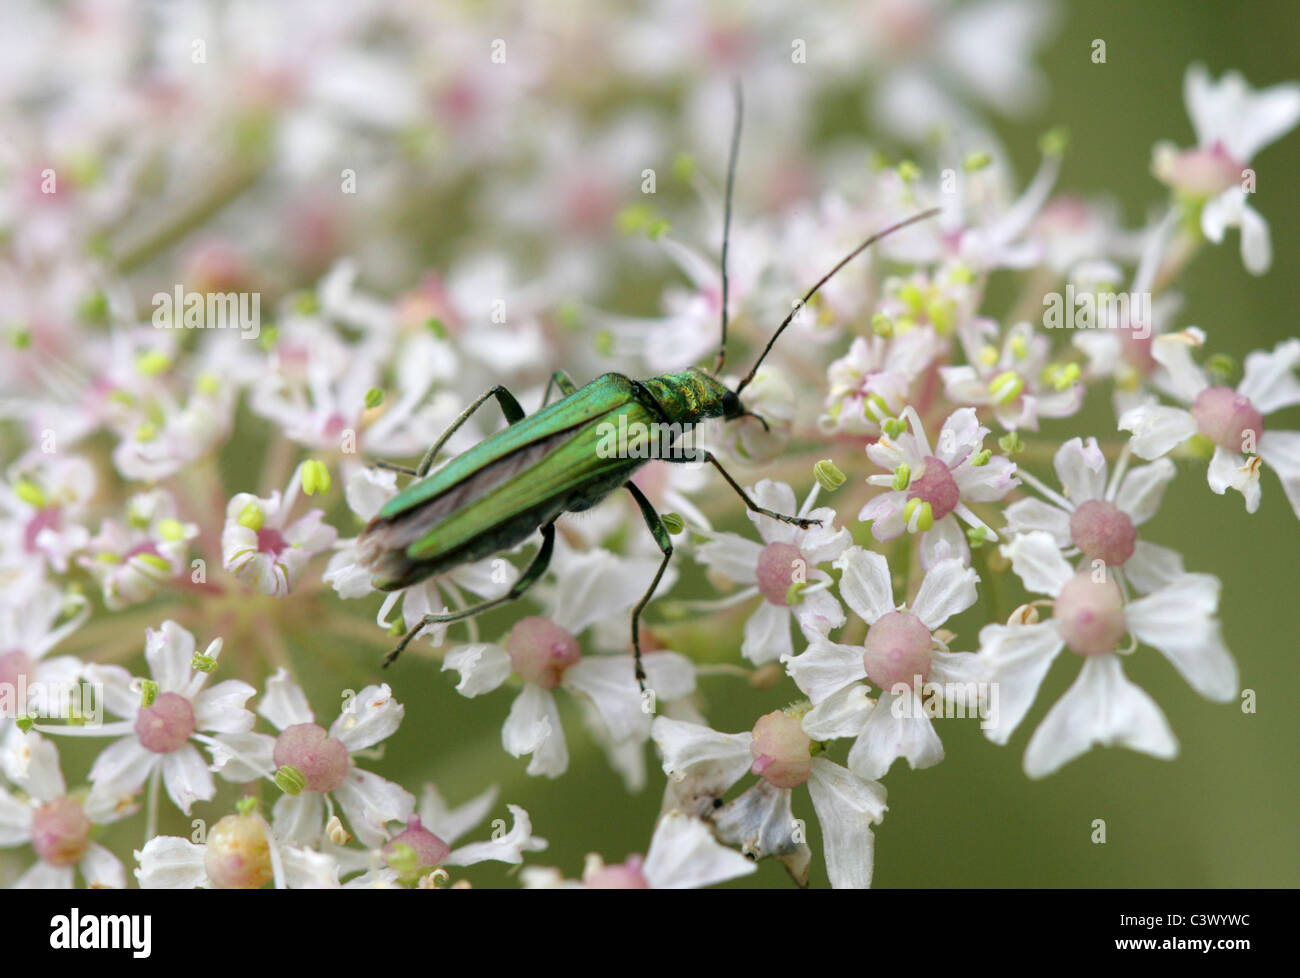 Fleur femelle pattes épaisses Beetle, Oedemera nobilis, Oedemeridae. Août, Hertfordshire. Se nourrir de Berce du Caucase. Banque D'Images